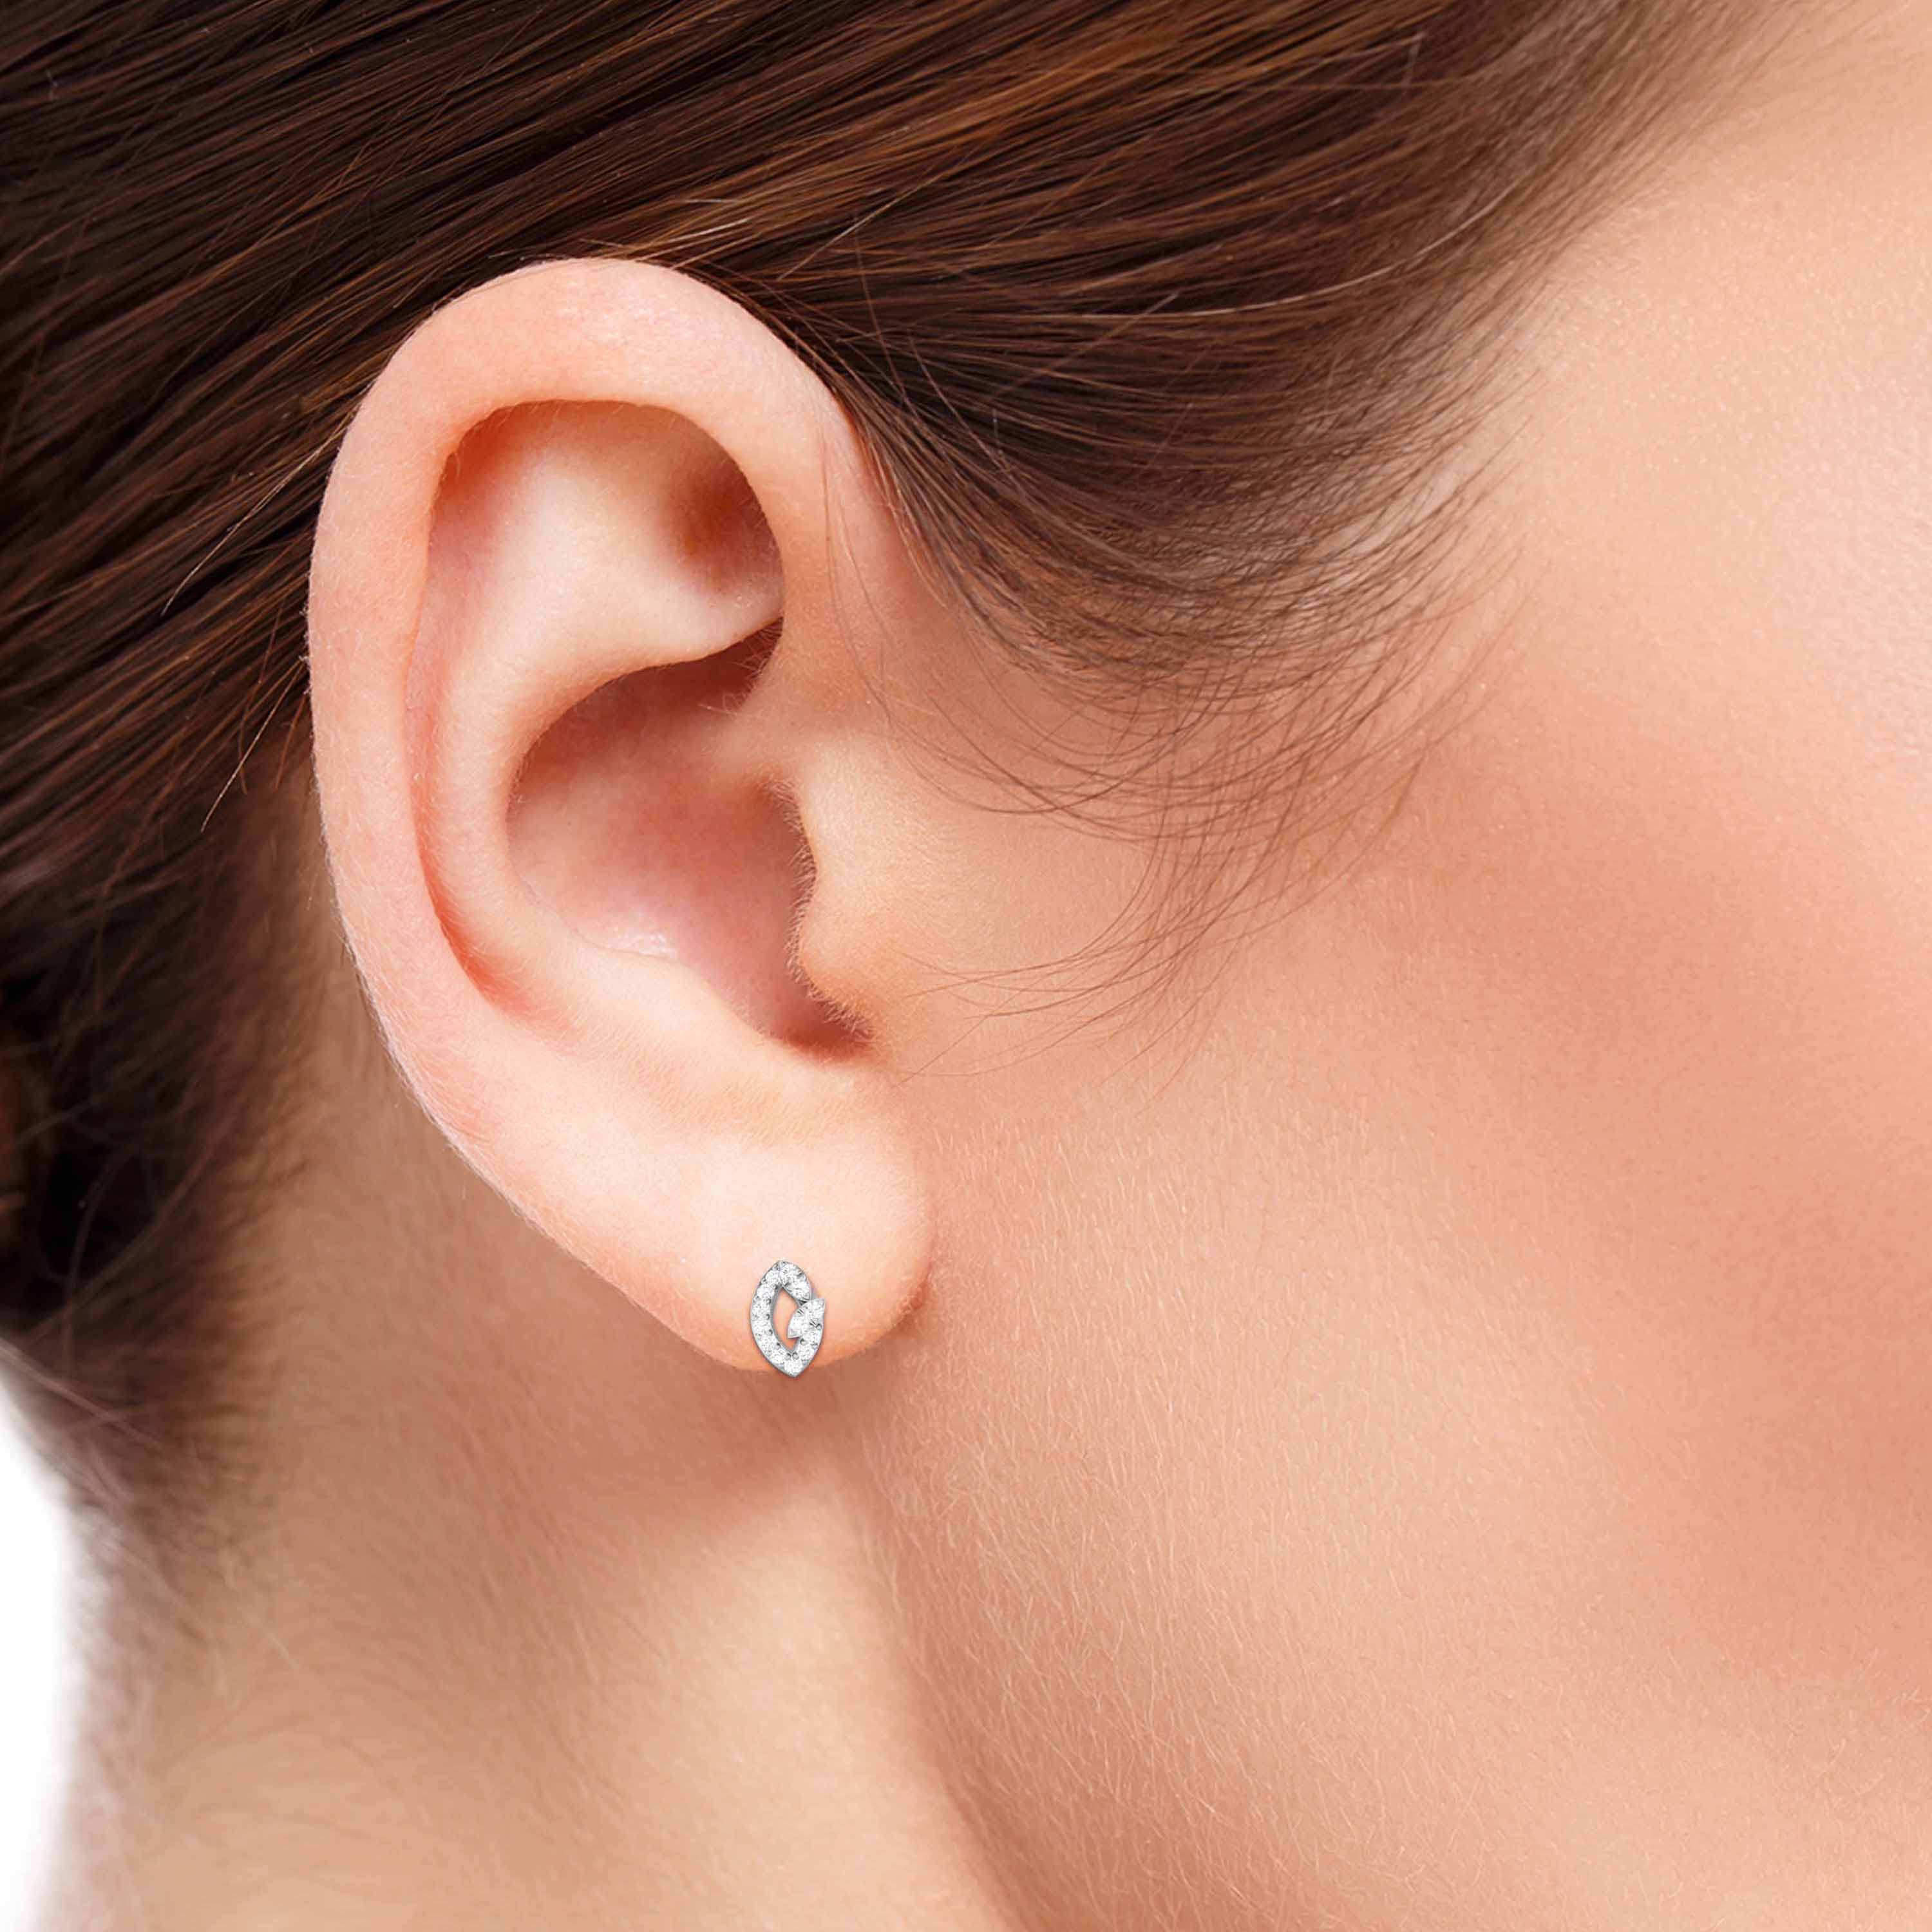 Designer Platinum Diamond Earrings for Women JL PT E OLS 13